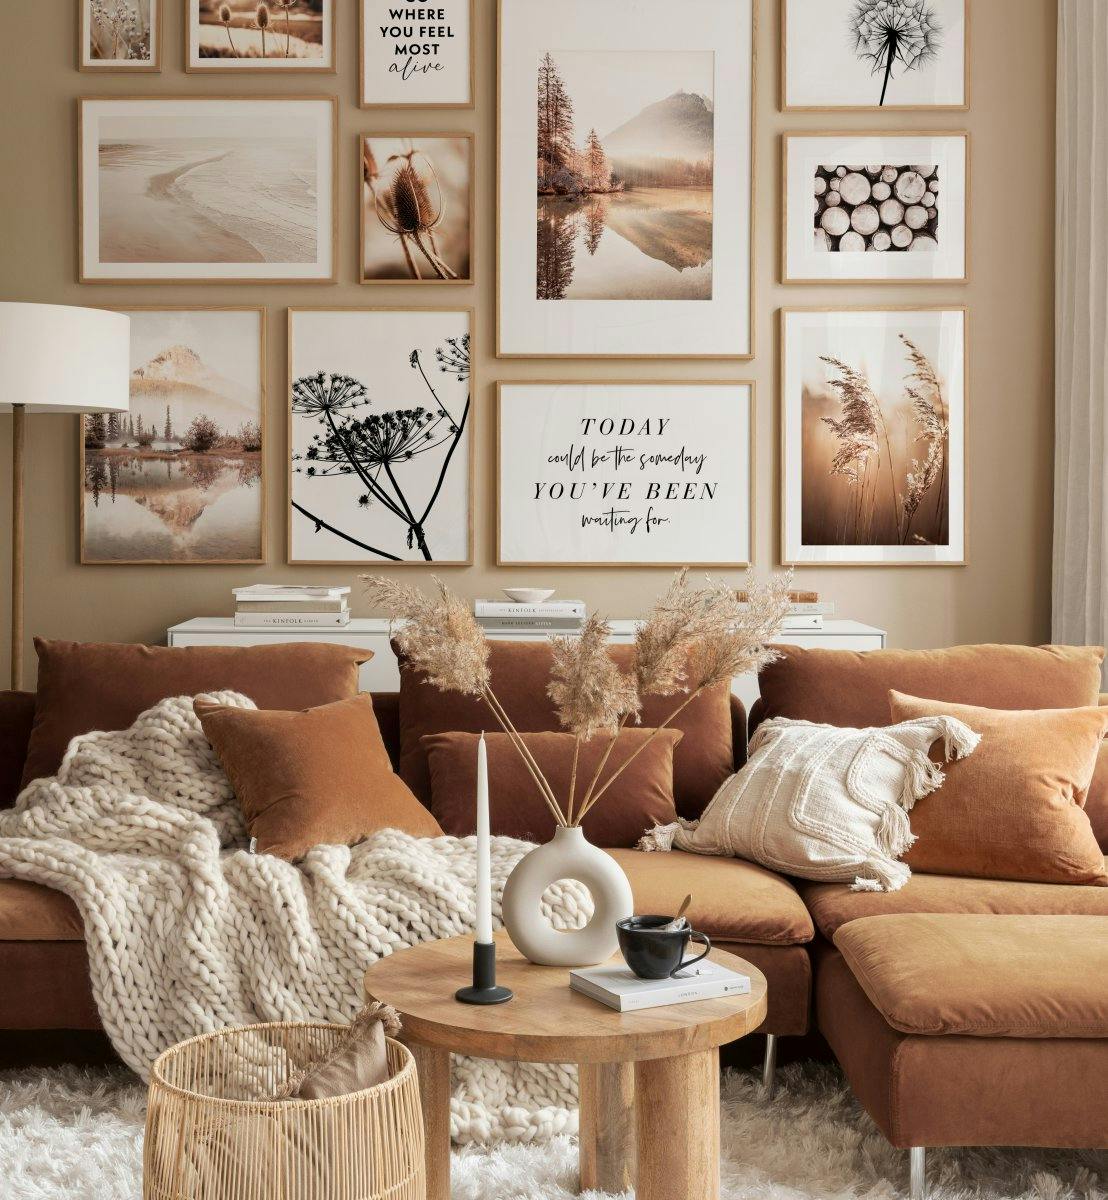 Bellissimo mix di fotografie naturalistiche e illustrazioni nei colori beige e monocromatici per il soggiorno